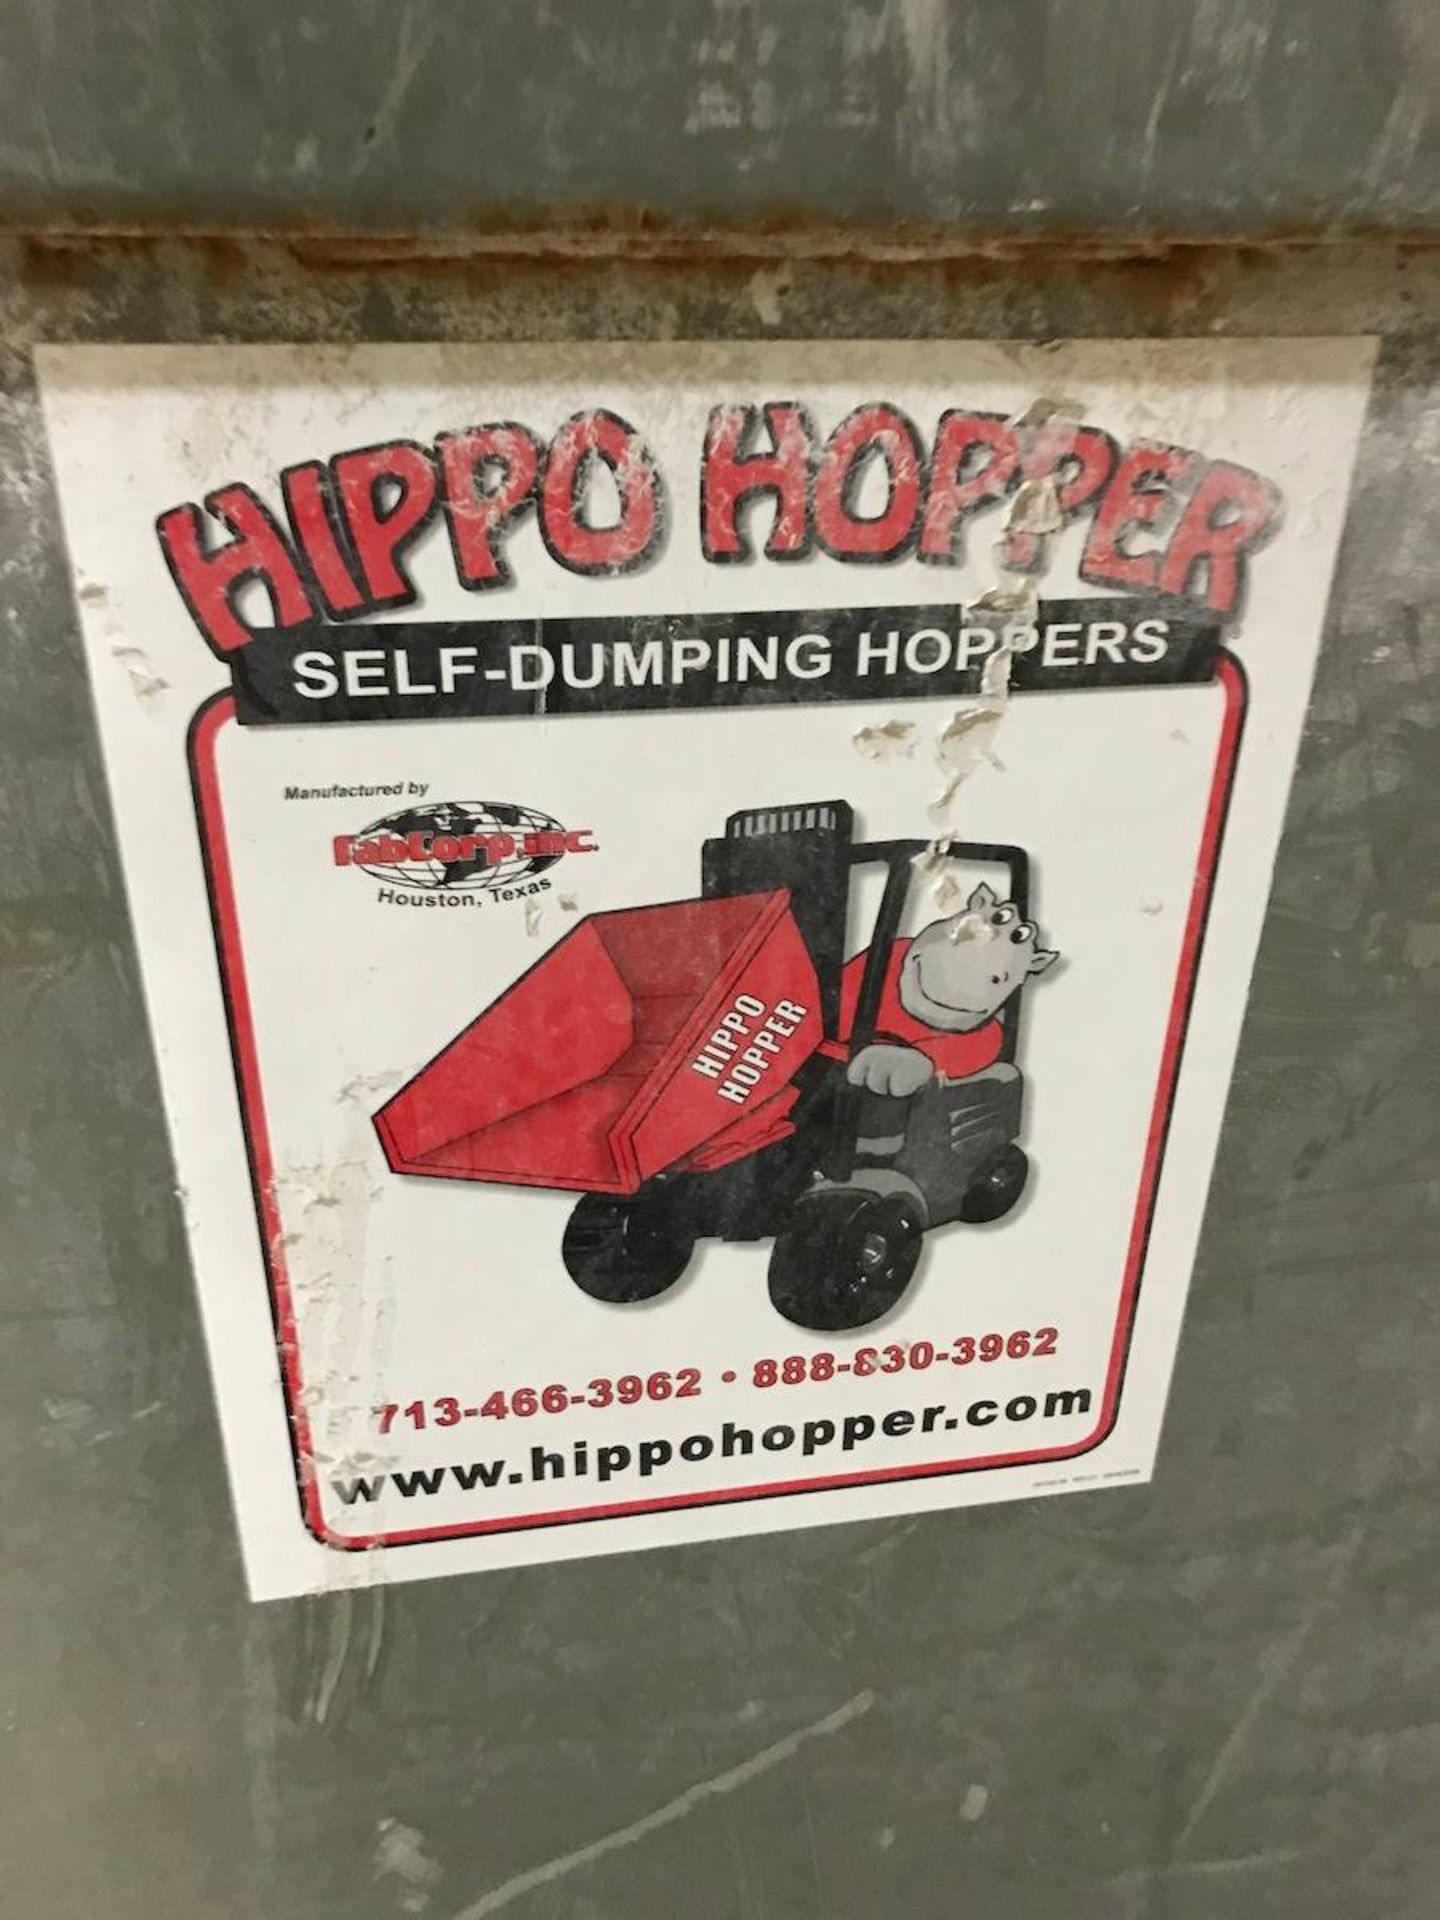 Hippo Hopper Dump Hoppers - Image 4 of 4